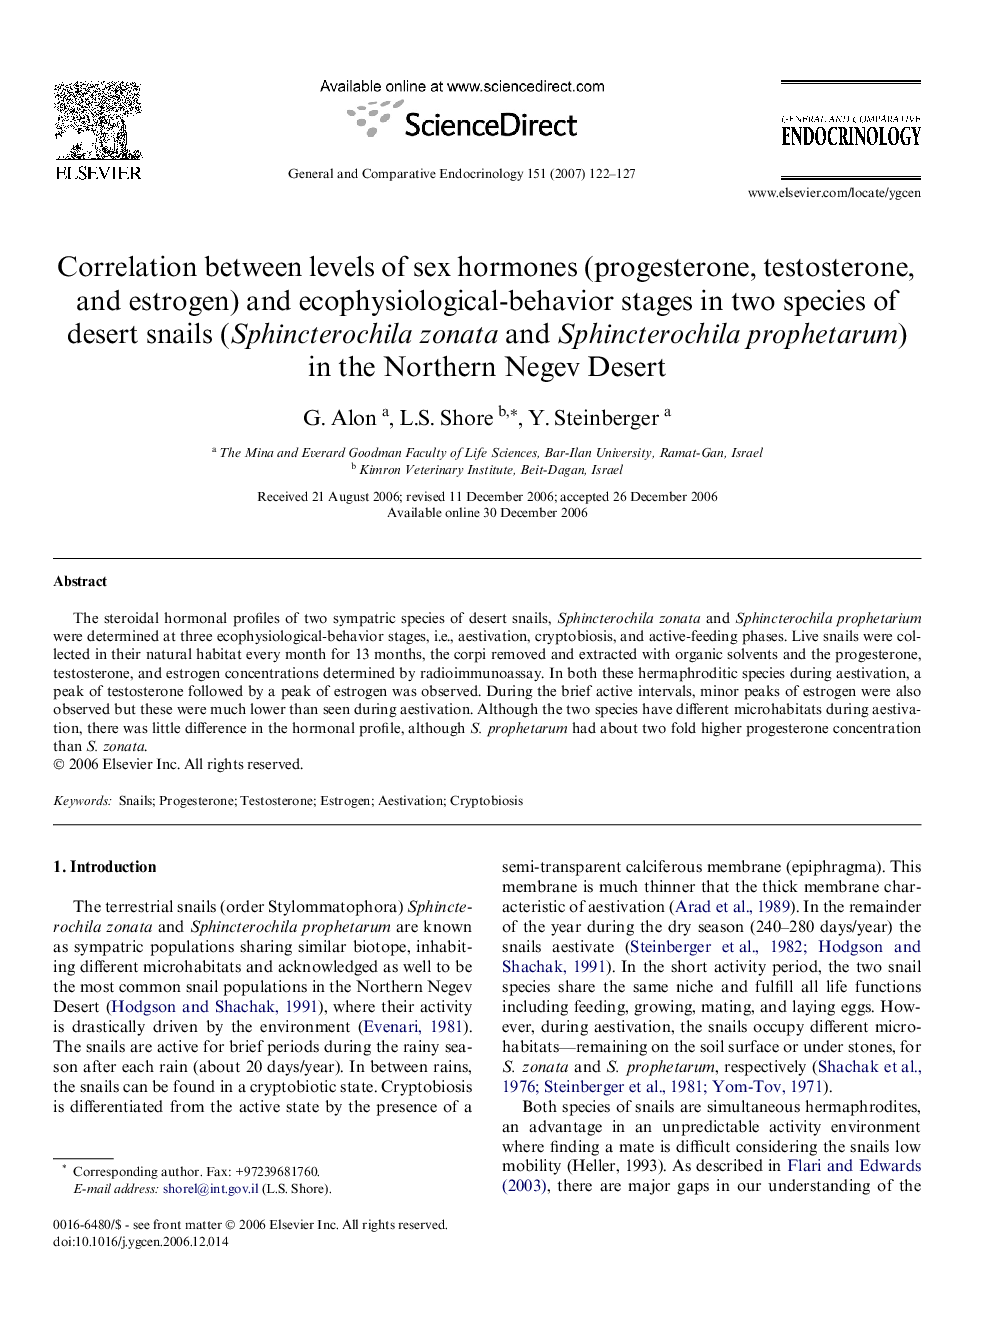 Correlation between levels of sex hormones (progesterone, testosterone, and estrogen) and ecophysiological-behavior stages in two species of desert snails (Sphincterochila zonata and Sphincterochila prophetarum) in the Northern Negev Desert